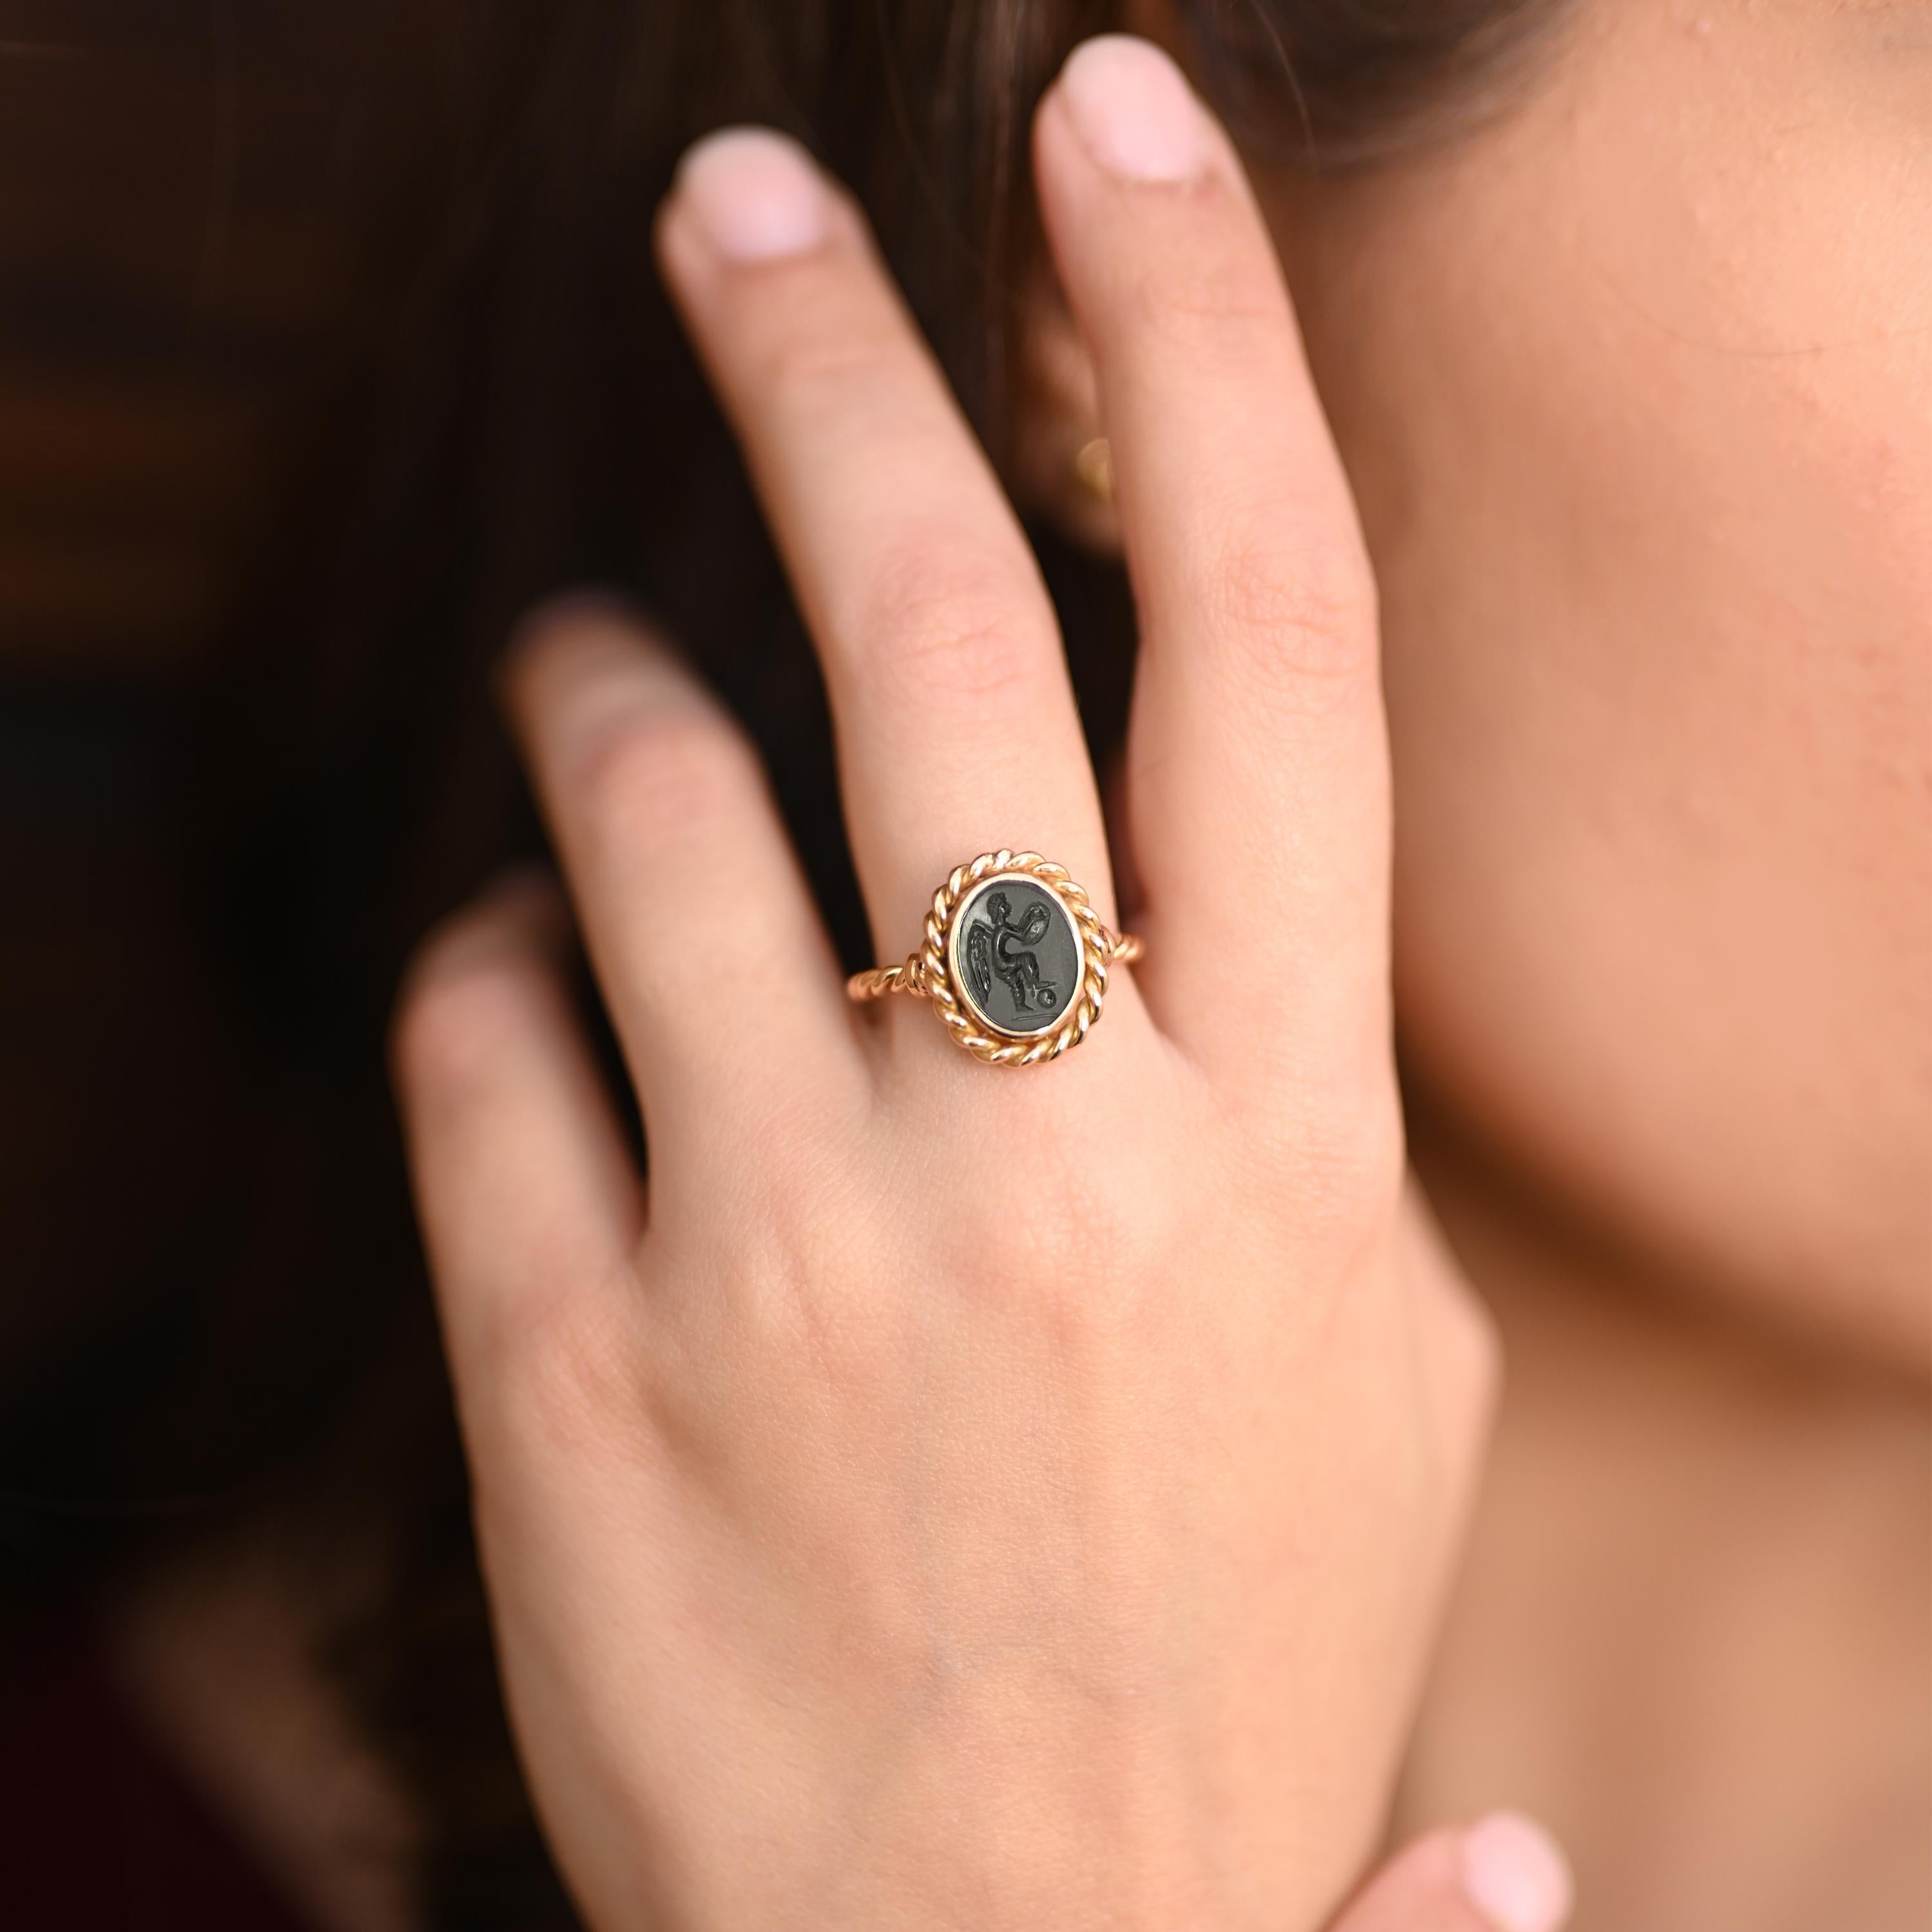 <p>Dieser Ring aus 18-karätigem Gold, der von unseren erfahrenen Goldschmieden sorgfältig gefertigt wurde, zeigt ein authentisches römisches Onyx-Intaglio aus dem 1. bis 2. Jahrhundert nach Christus.</p>
<p>Das Stichtiefdruckbild zeigt eine Siegerin